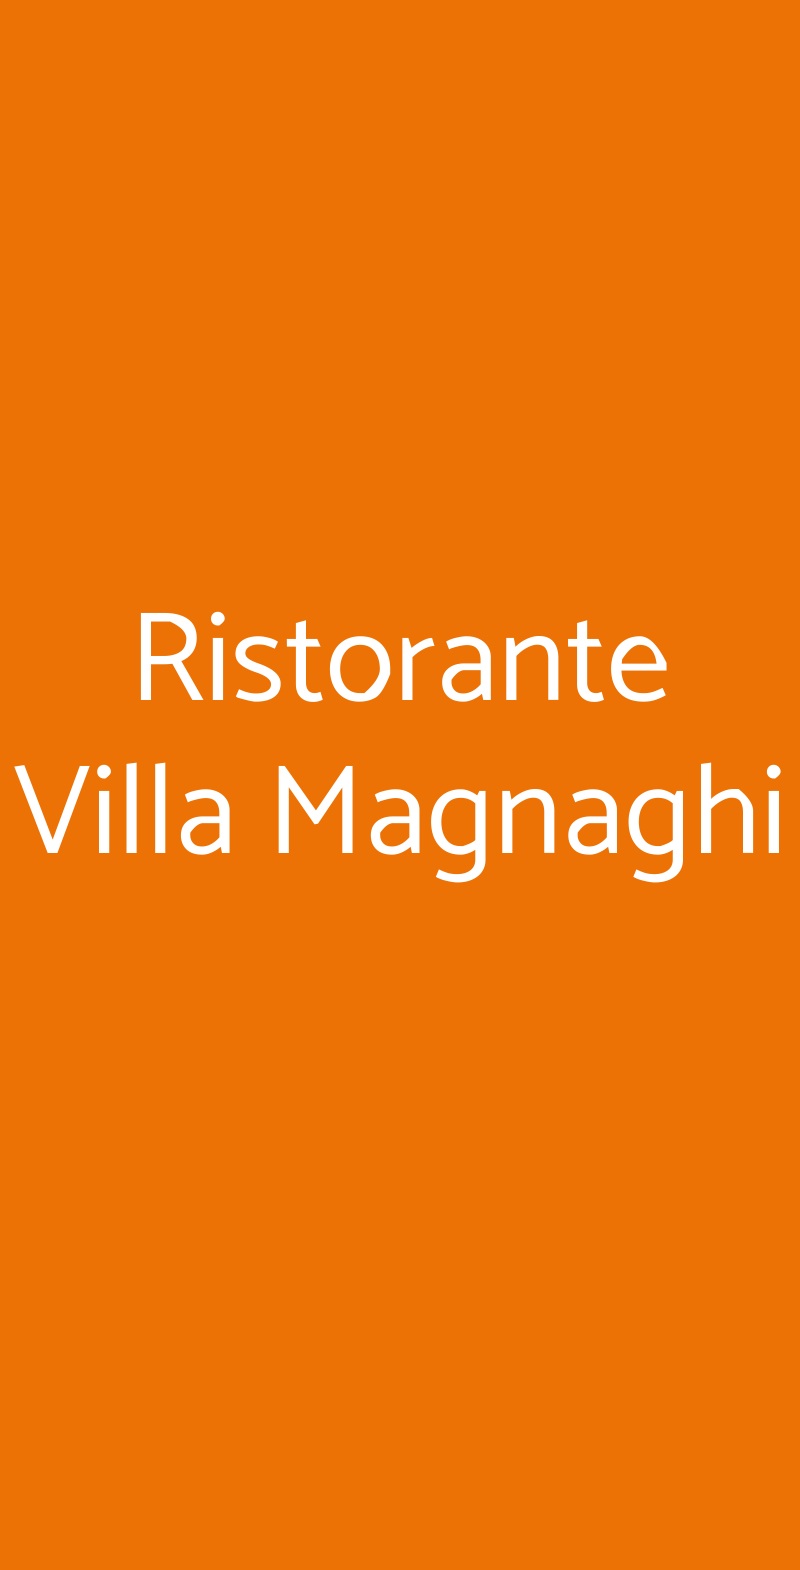 Ristorante Villa Magnaghi Marcallo con Casone menù 1 pagina